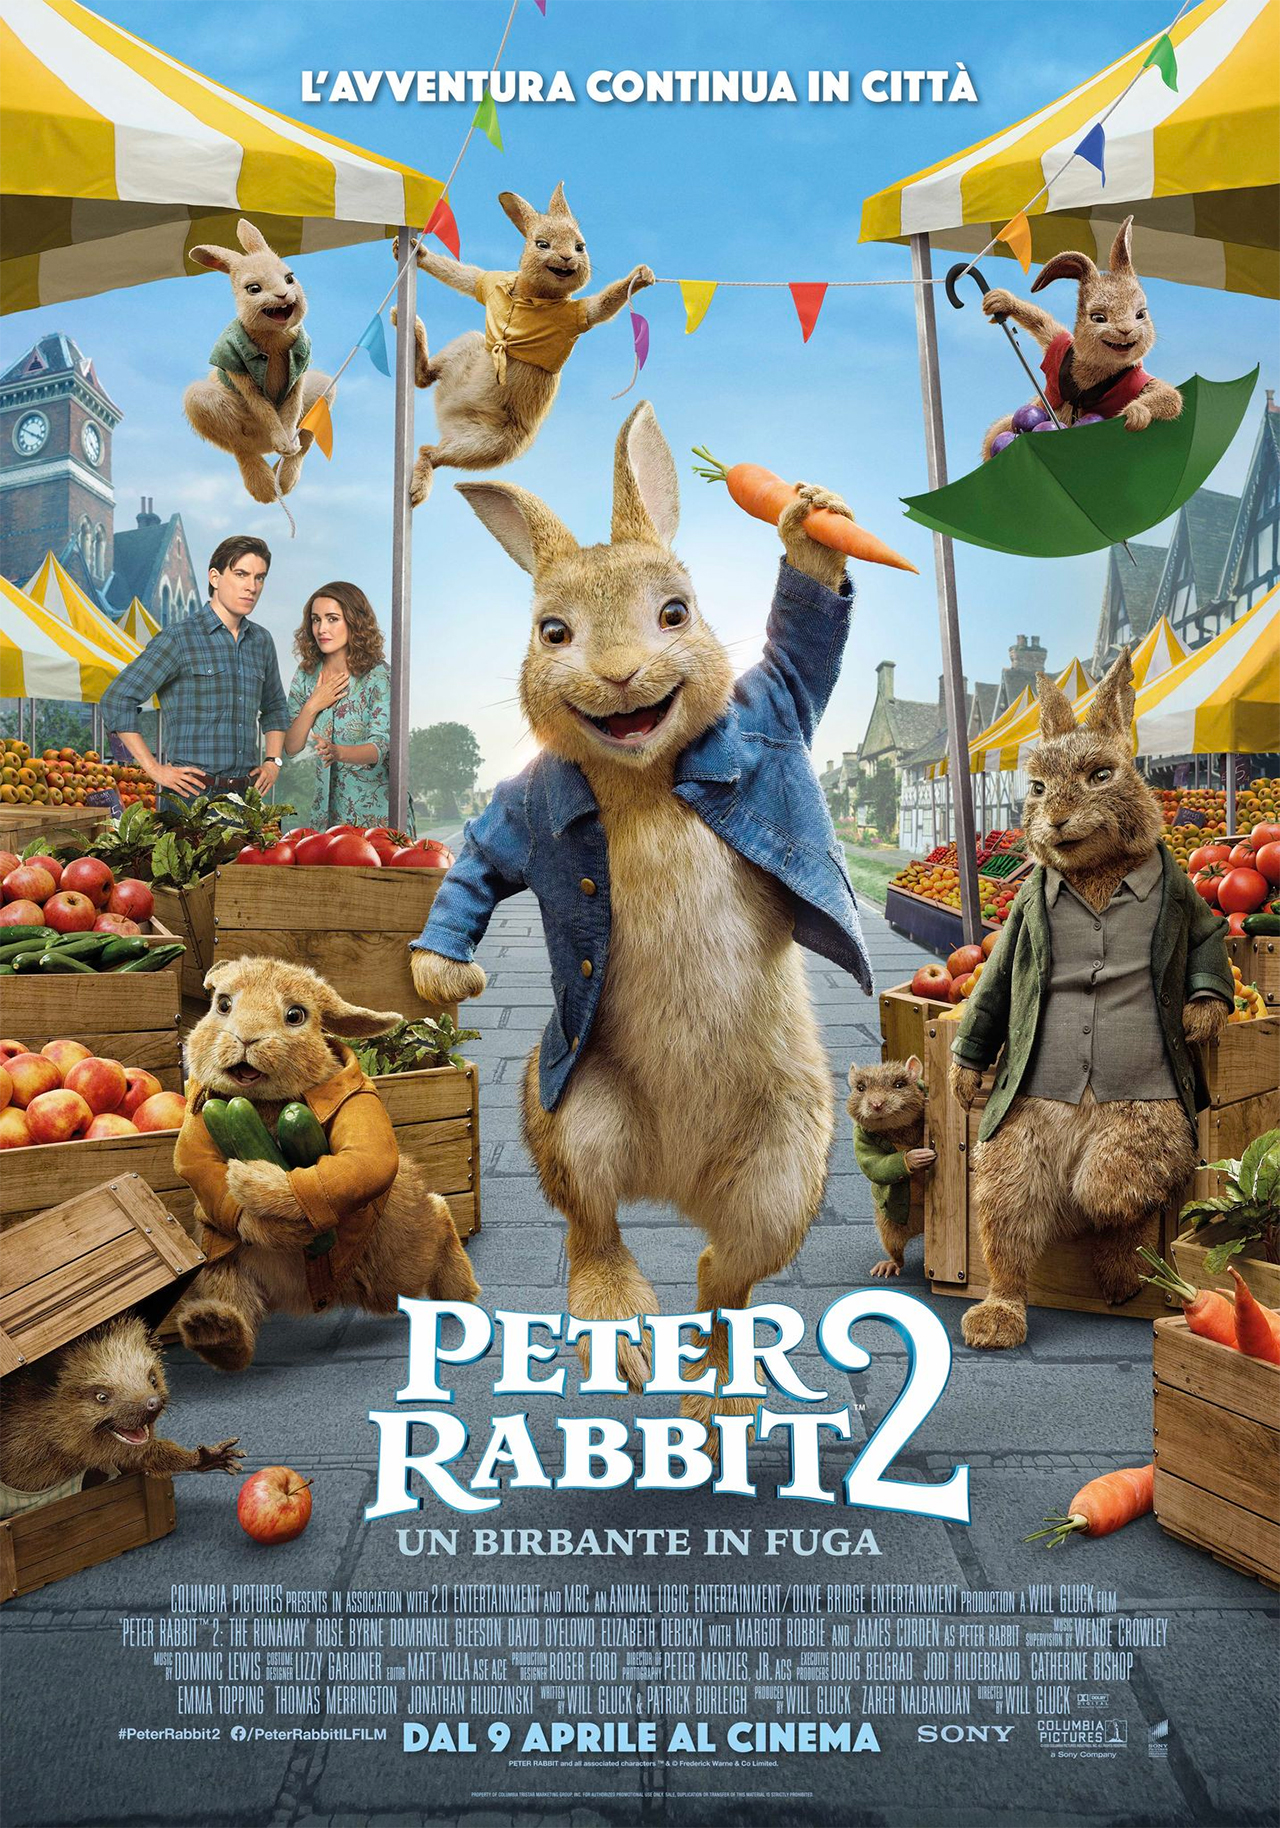  Dall'articolo: Peter Rabbit 2 - Un birbante in fuga, il poster definitivo del film.